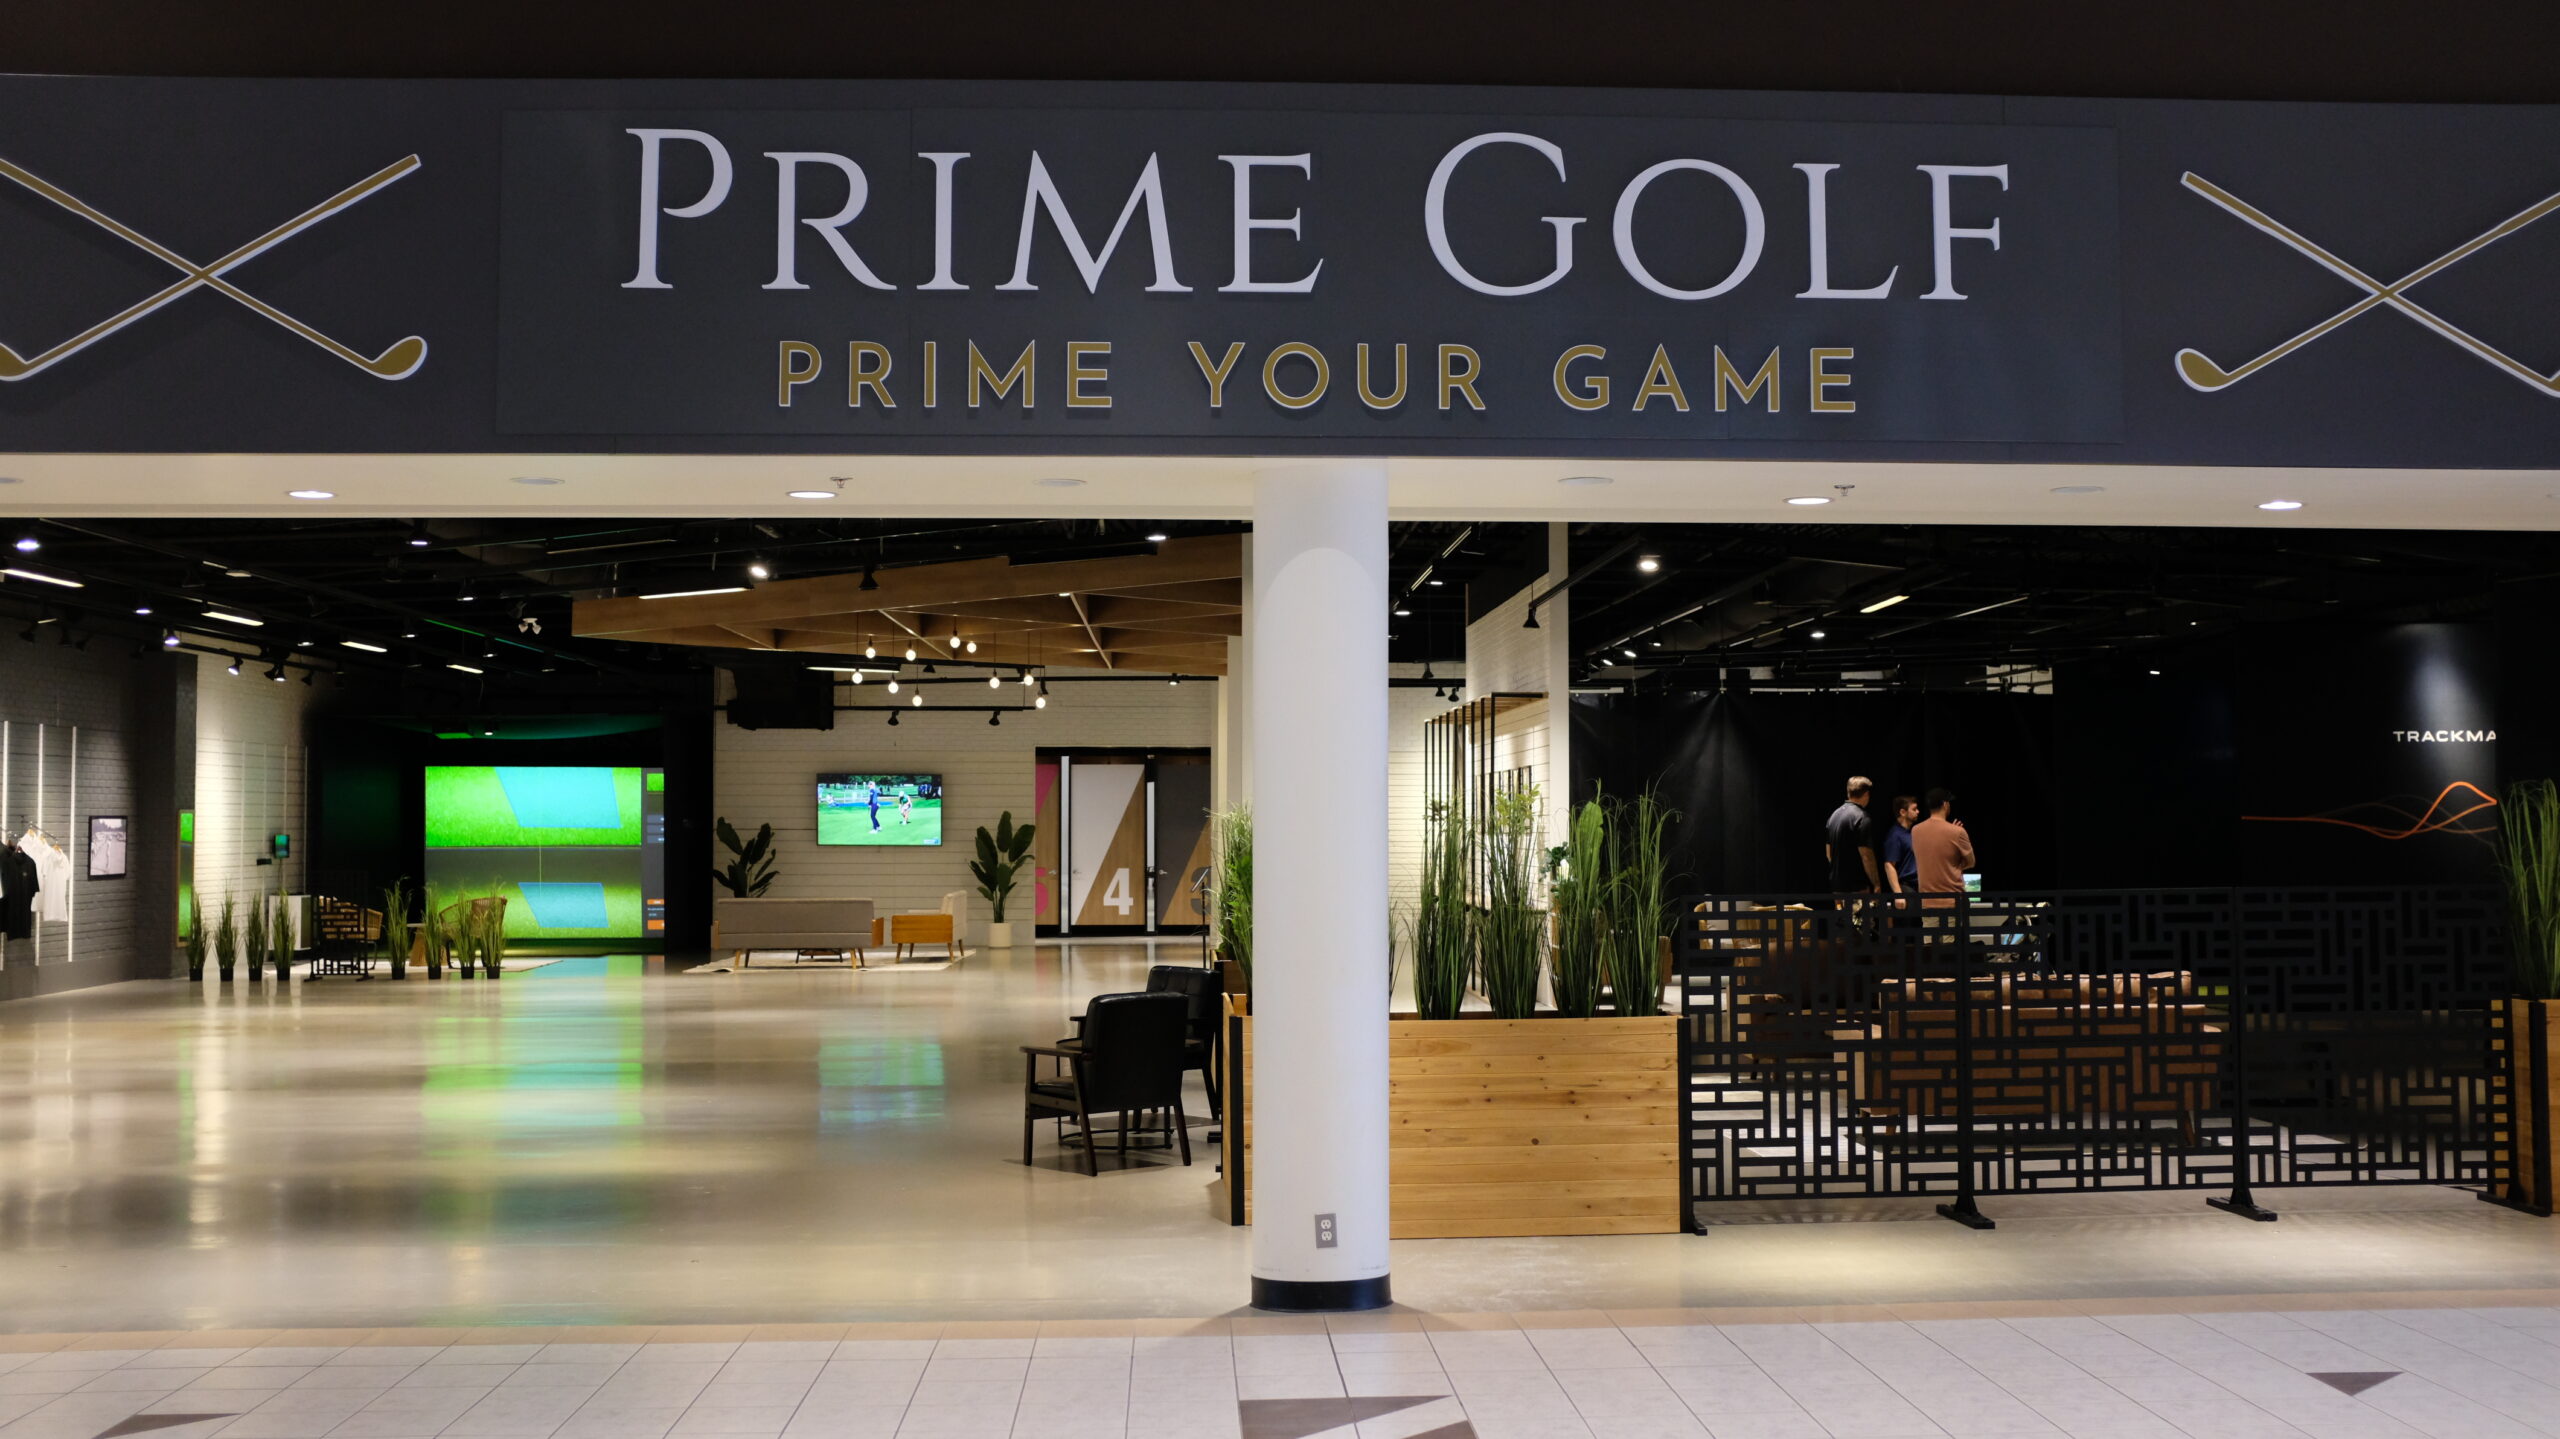 Prime Golf